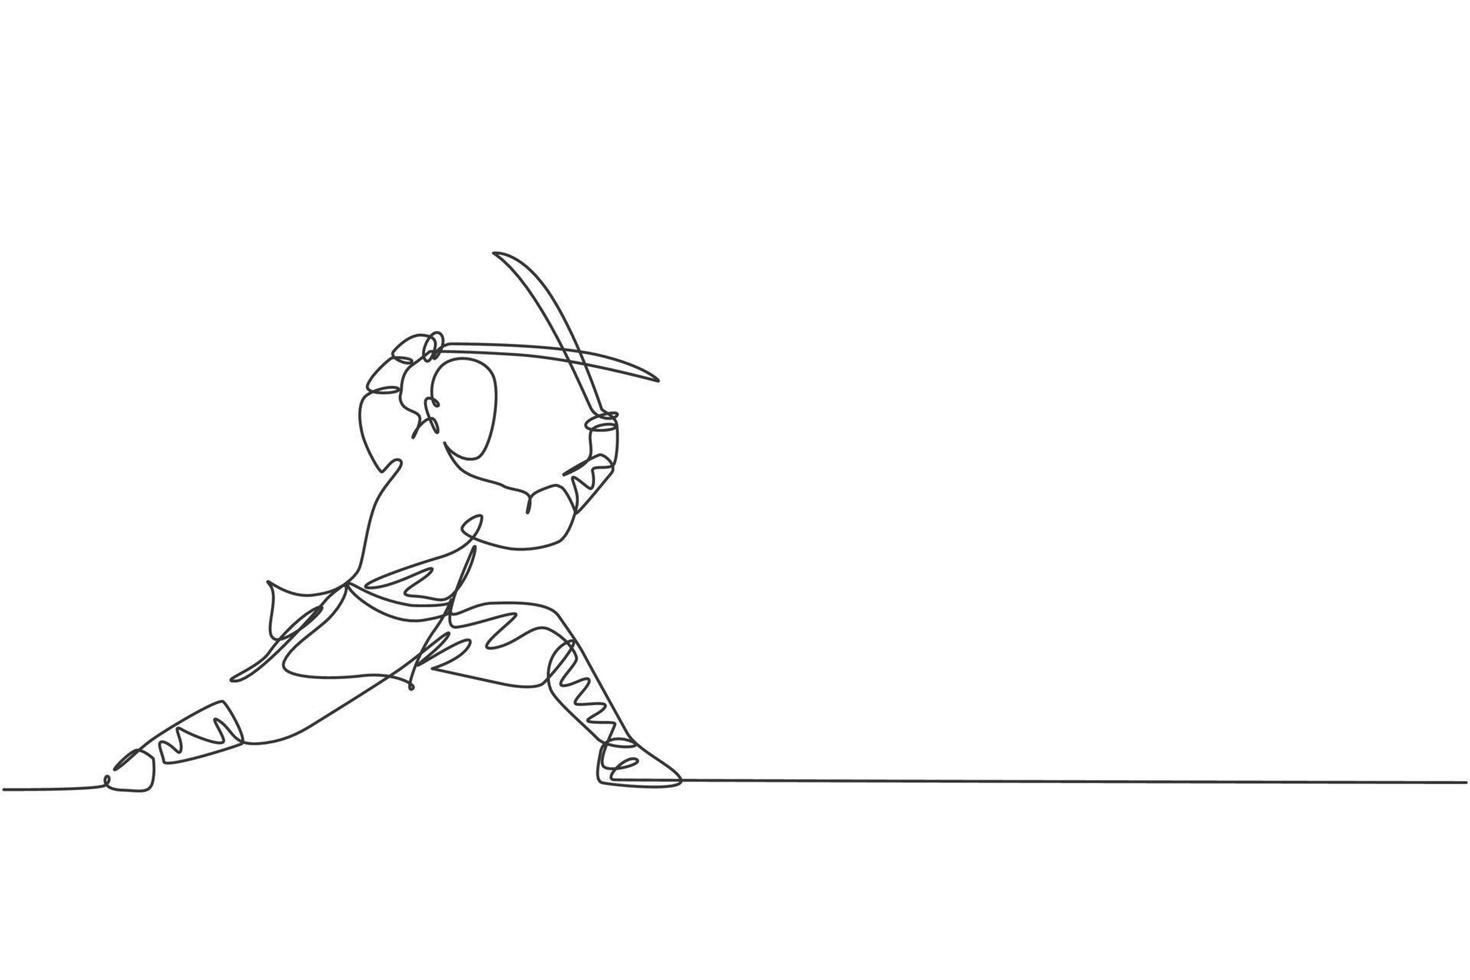 enkele doorlopende lijntekening van jonge gespierde shaolin monnik man met zwaard trein in shaolin tempel. traditioneel chinees kungfu-gevechtsconcept. trendy één lijn tekenen ontwerp vectorillustratie vector